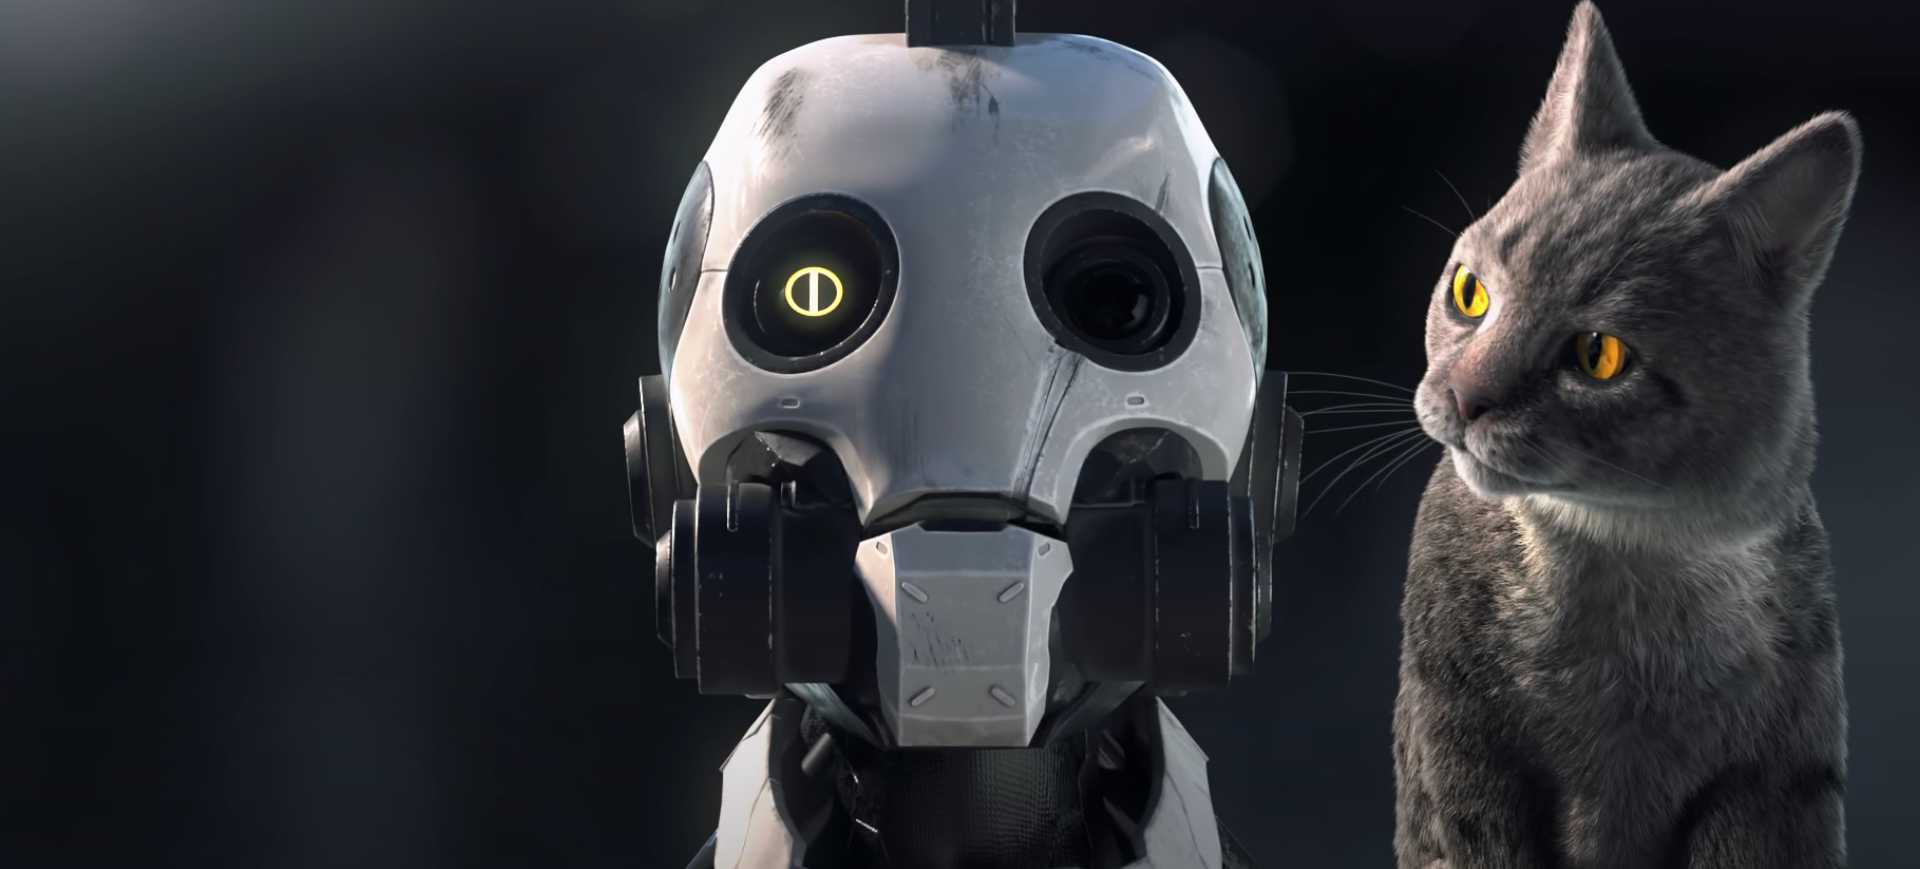 Captura de tela da série de animação Love, Death and Robots, exibida pela Netflix: à esquerda há a cabeça de um robô e à direita um gato olhando para ele